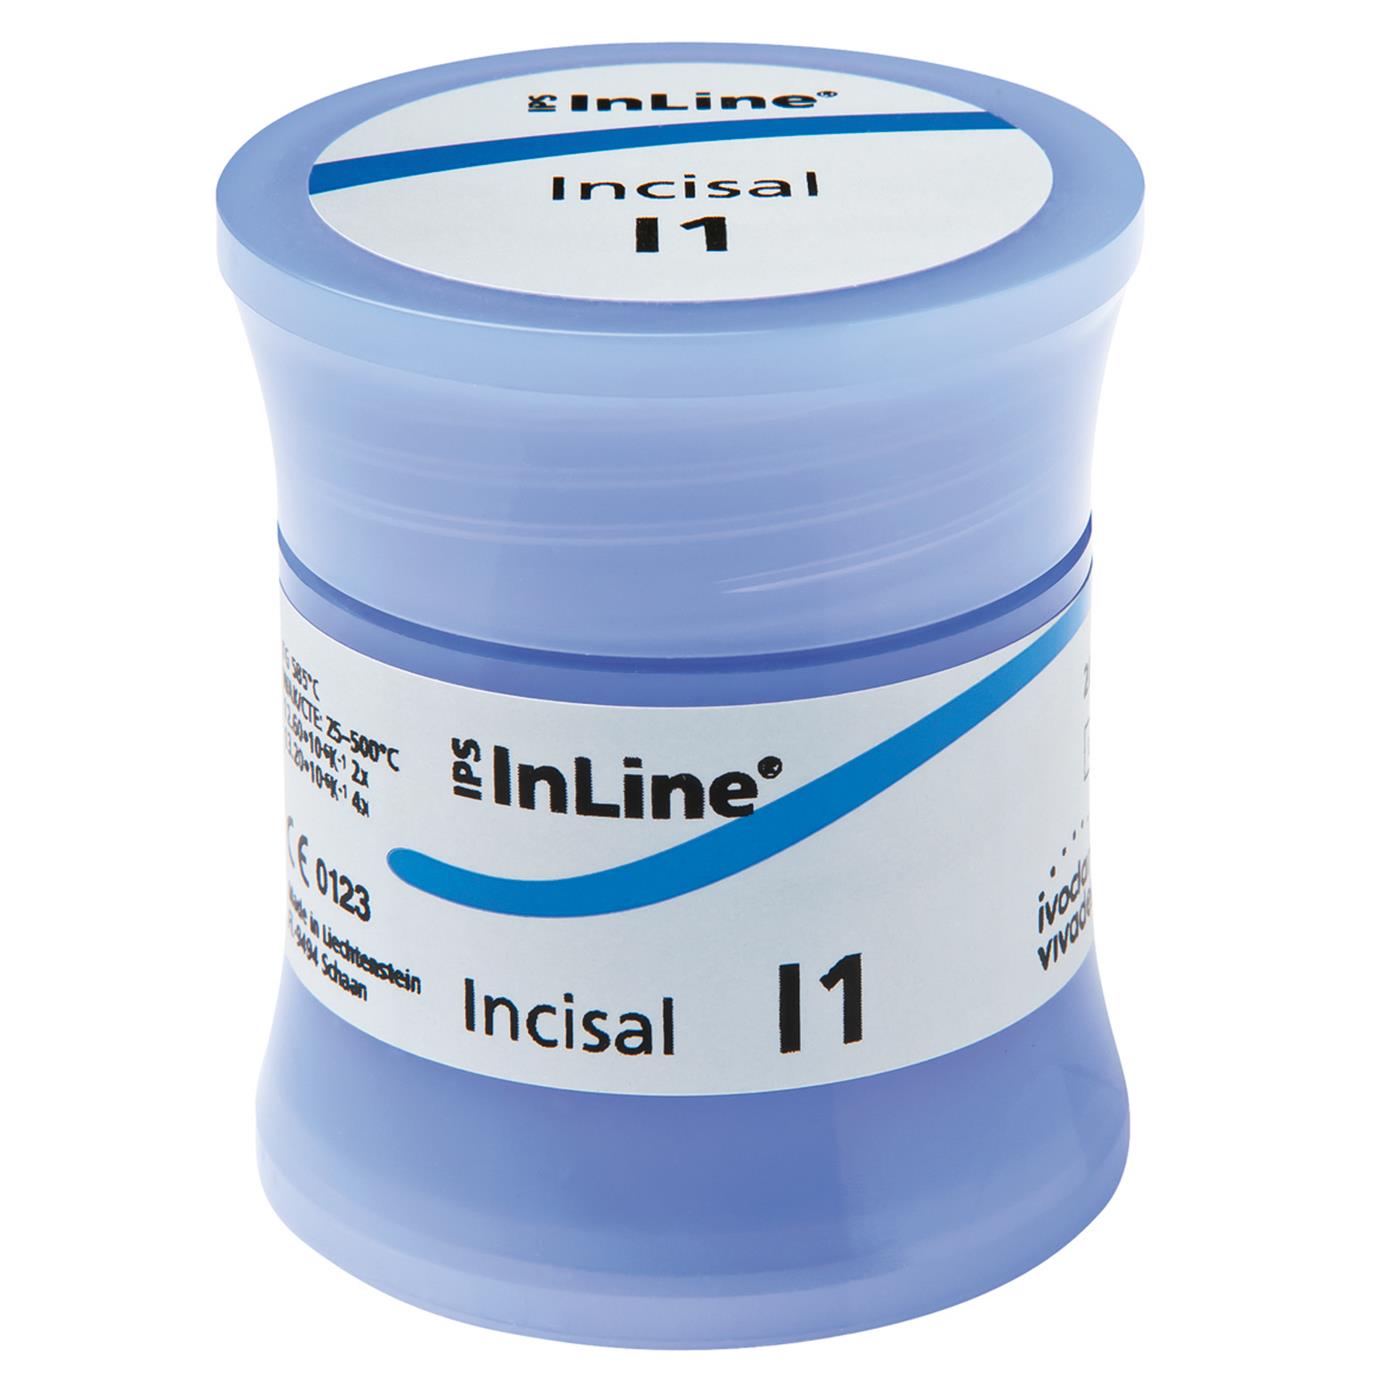 DentrealStore - Ivoclar Vivadent IPS InLine Incisal 20g